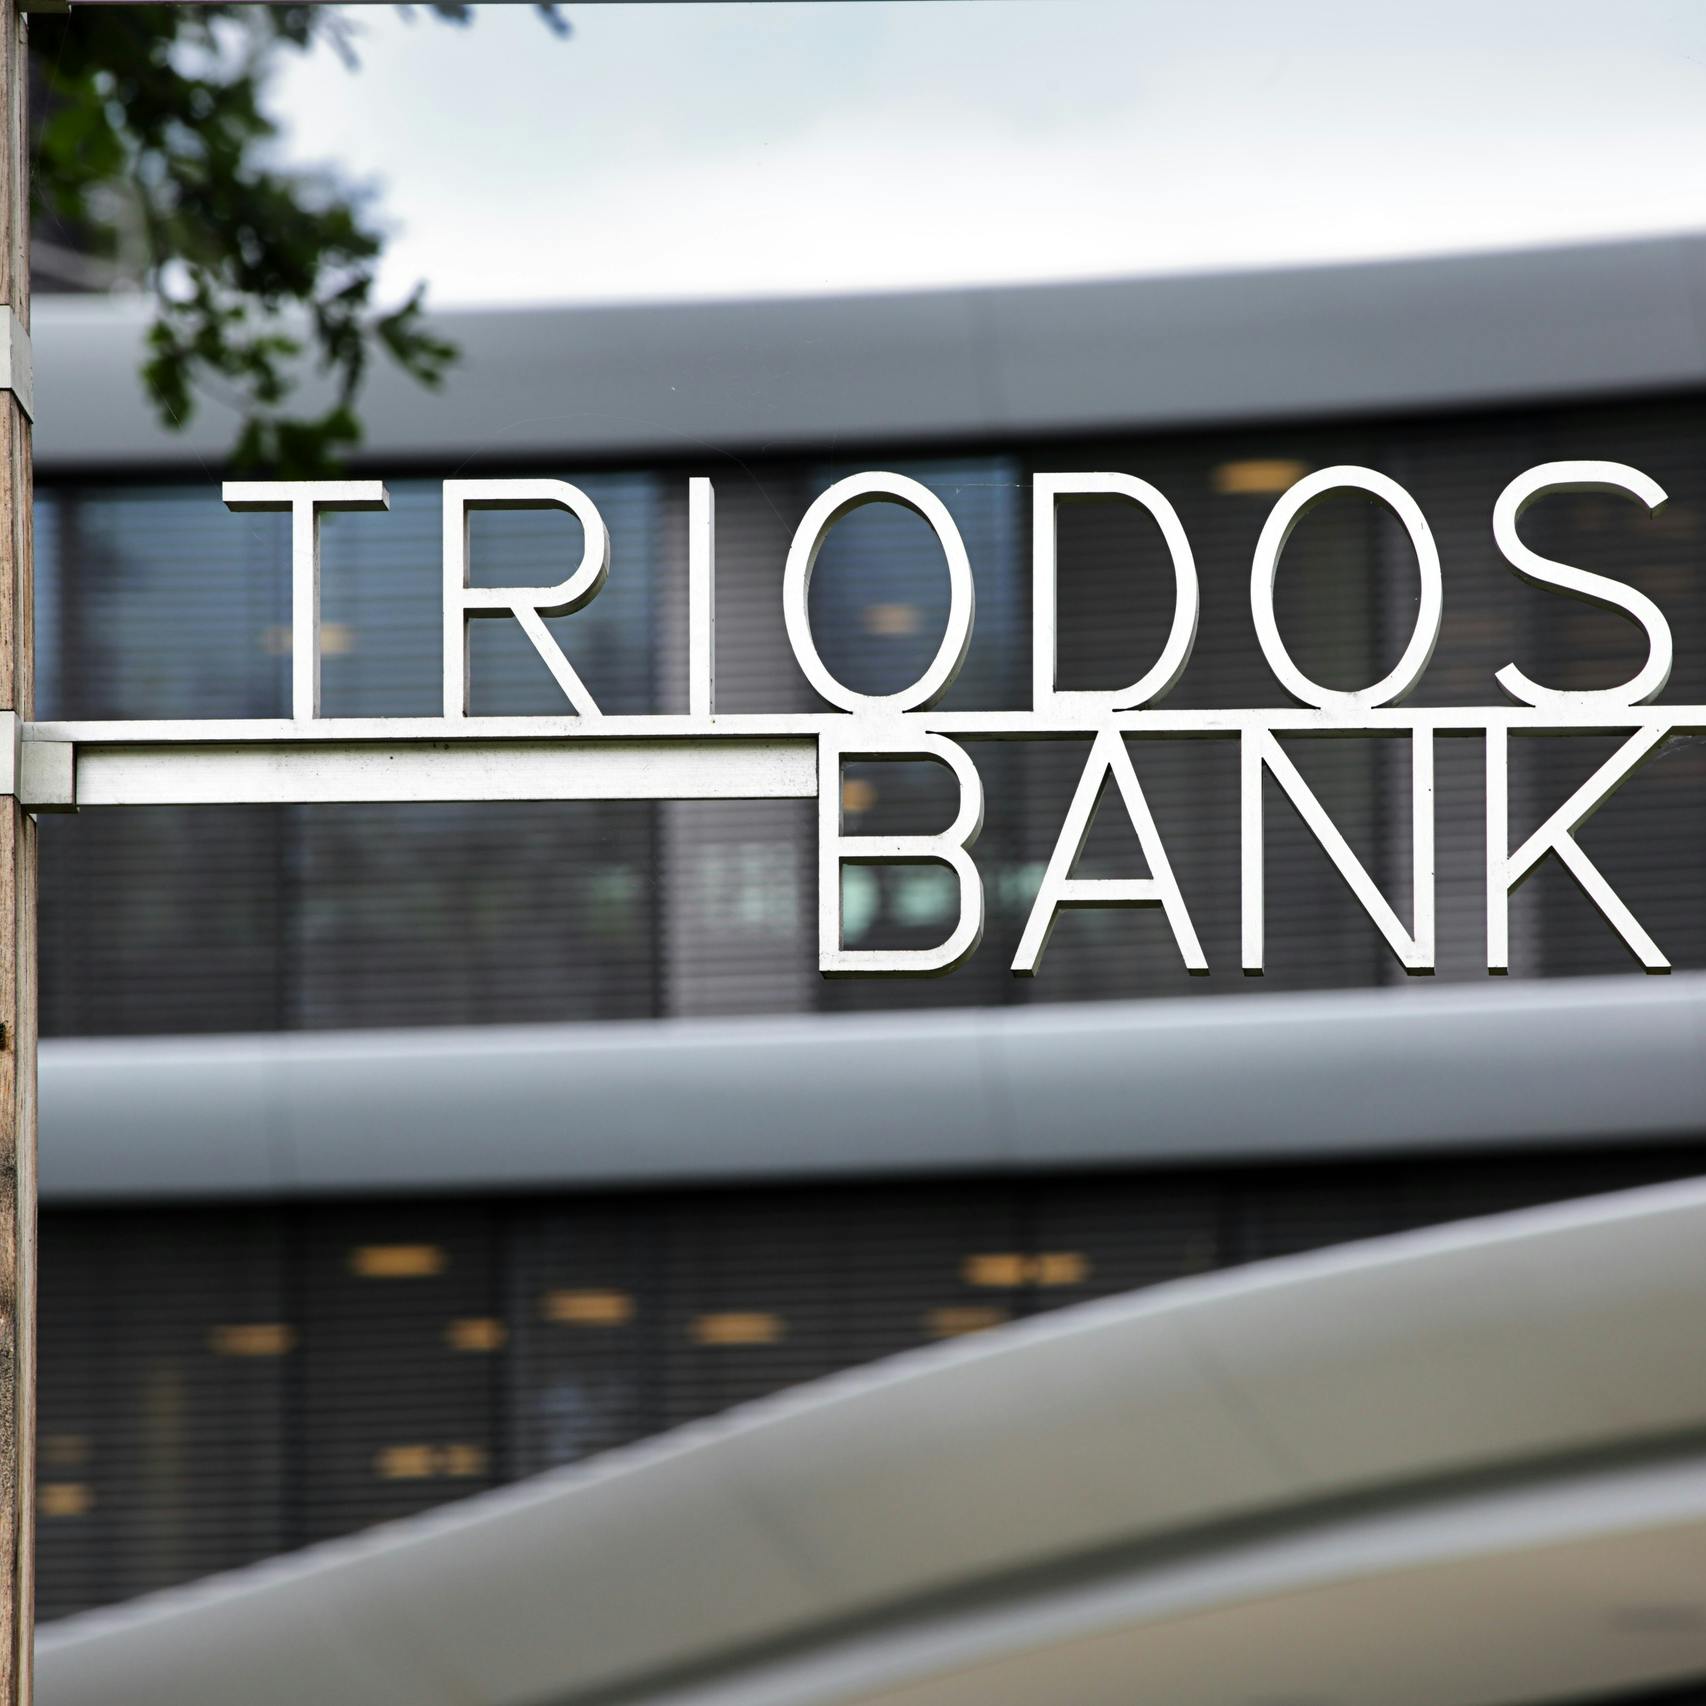 CEO Triodos Bank: 'Banenreductie nodig om impact te kunnen blijven maken' 